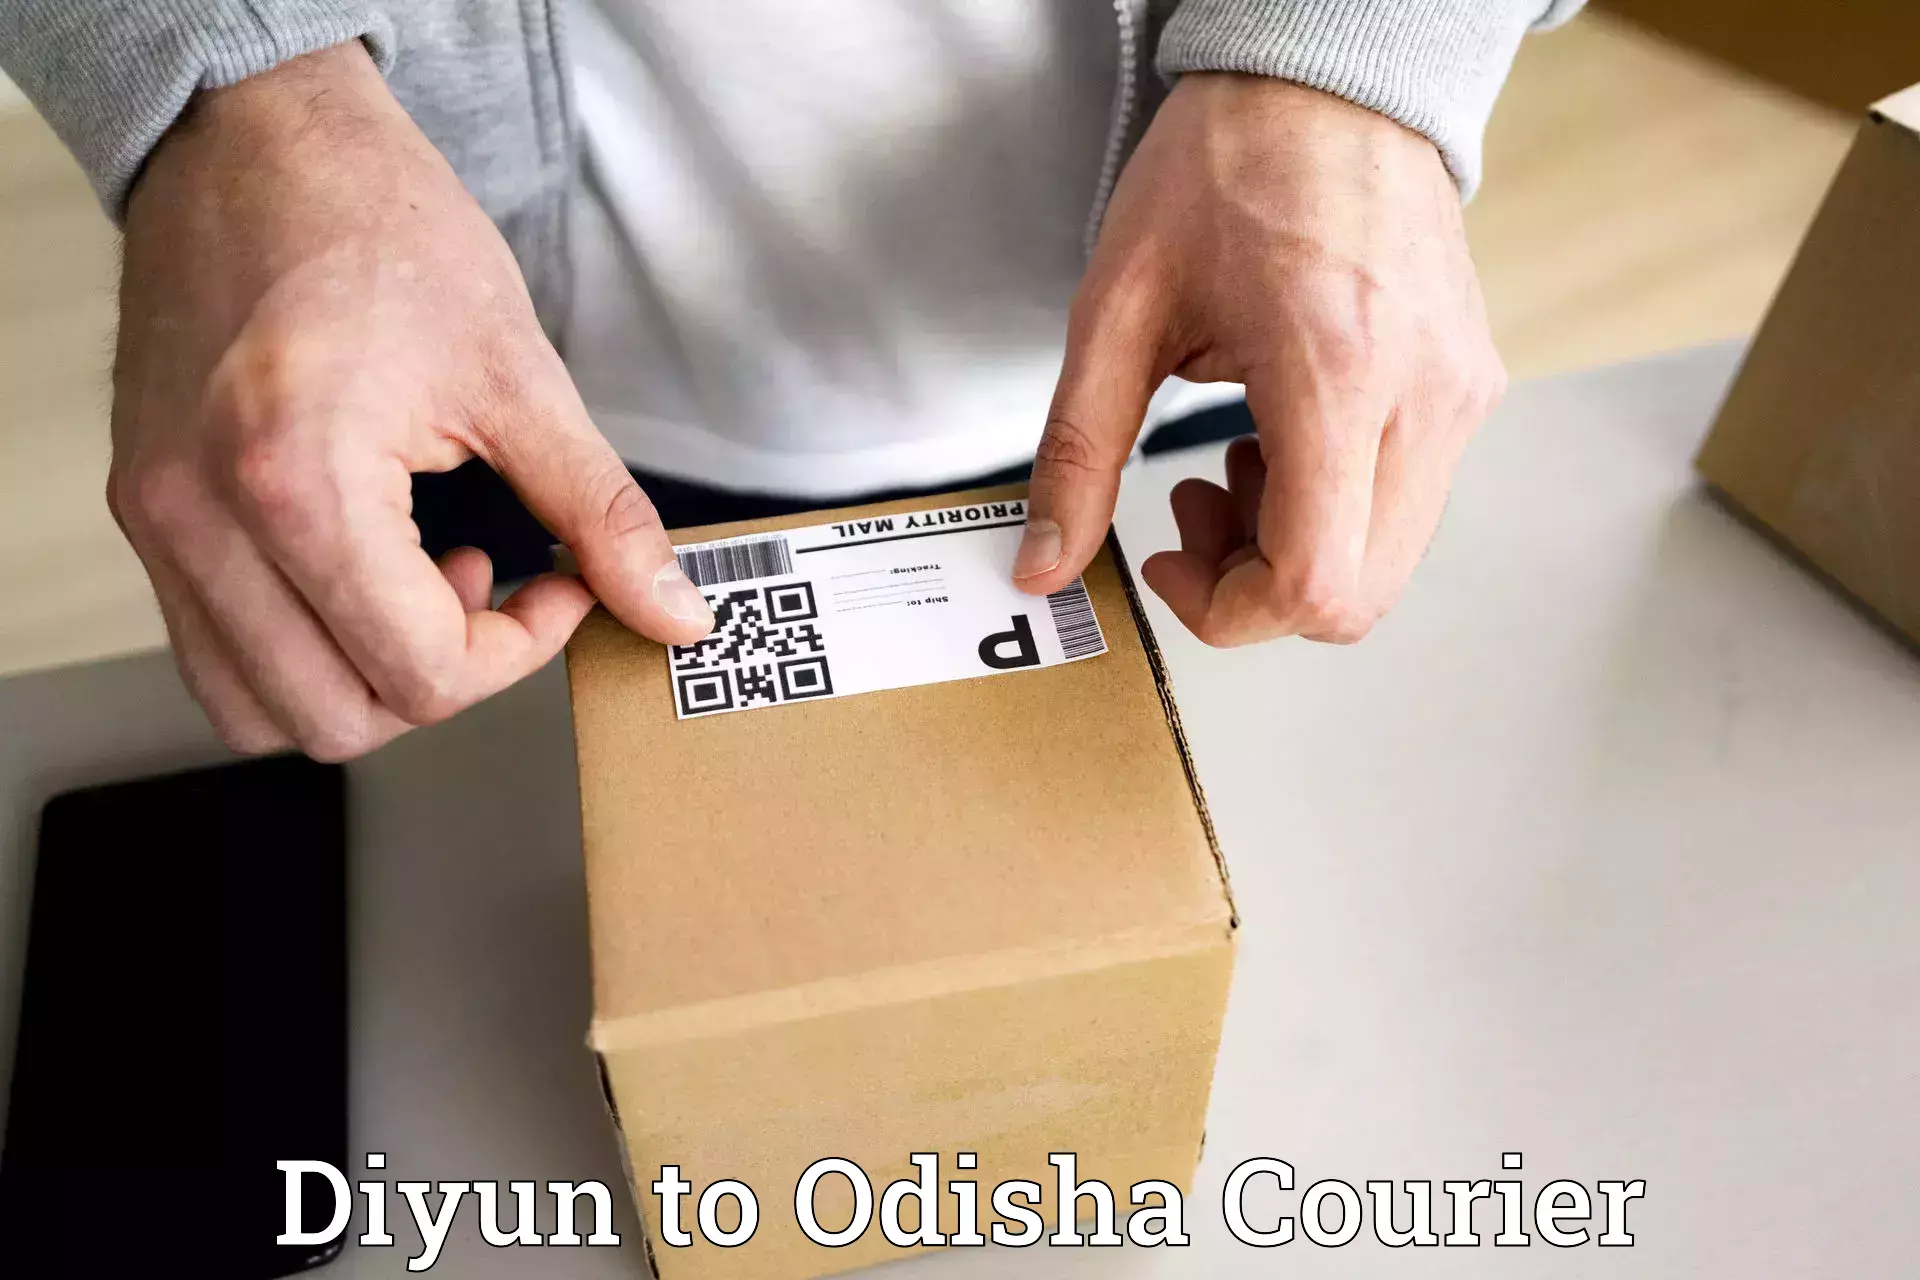 24/7 courier service in Diyun to Bhadrak